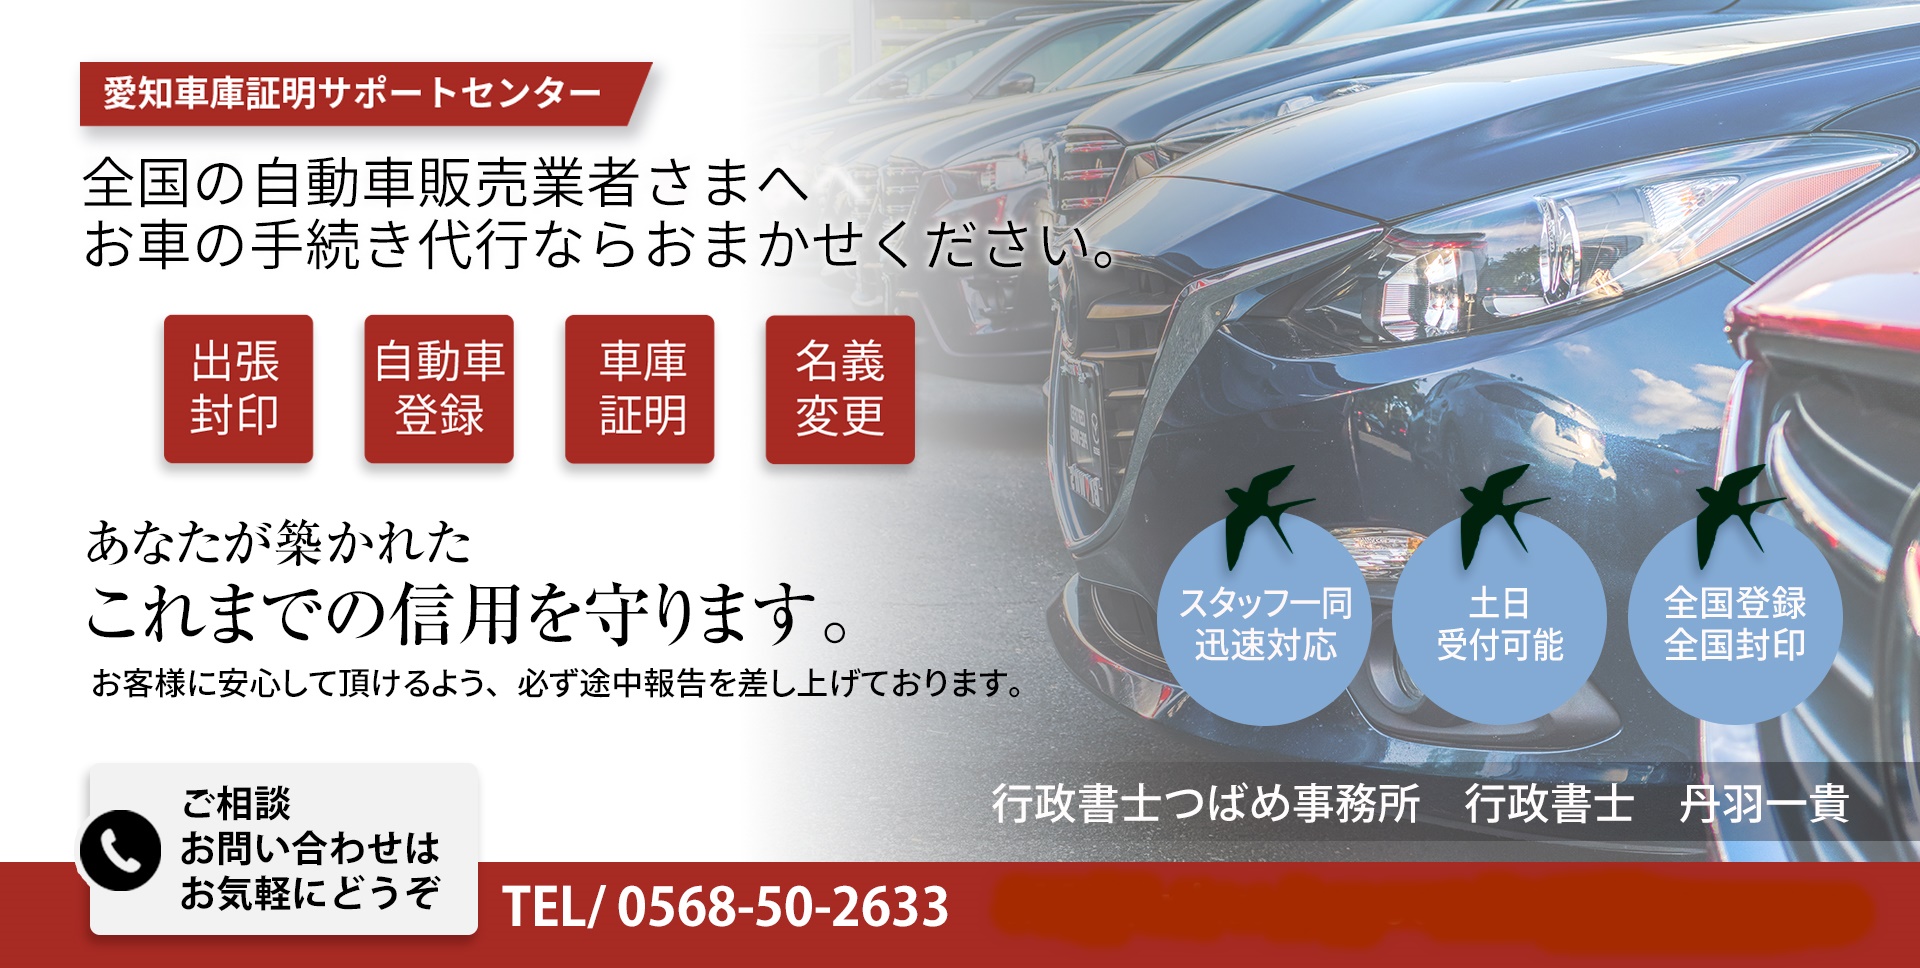 名古屋市東区の車庫証明 | 行政書士つばめ事務所が東警察署の車庫証明を代行します